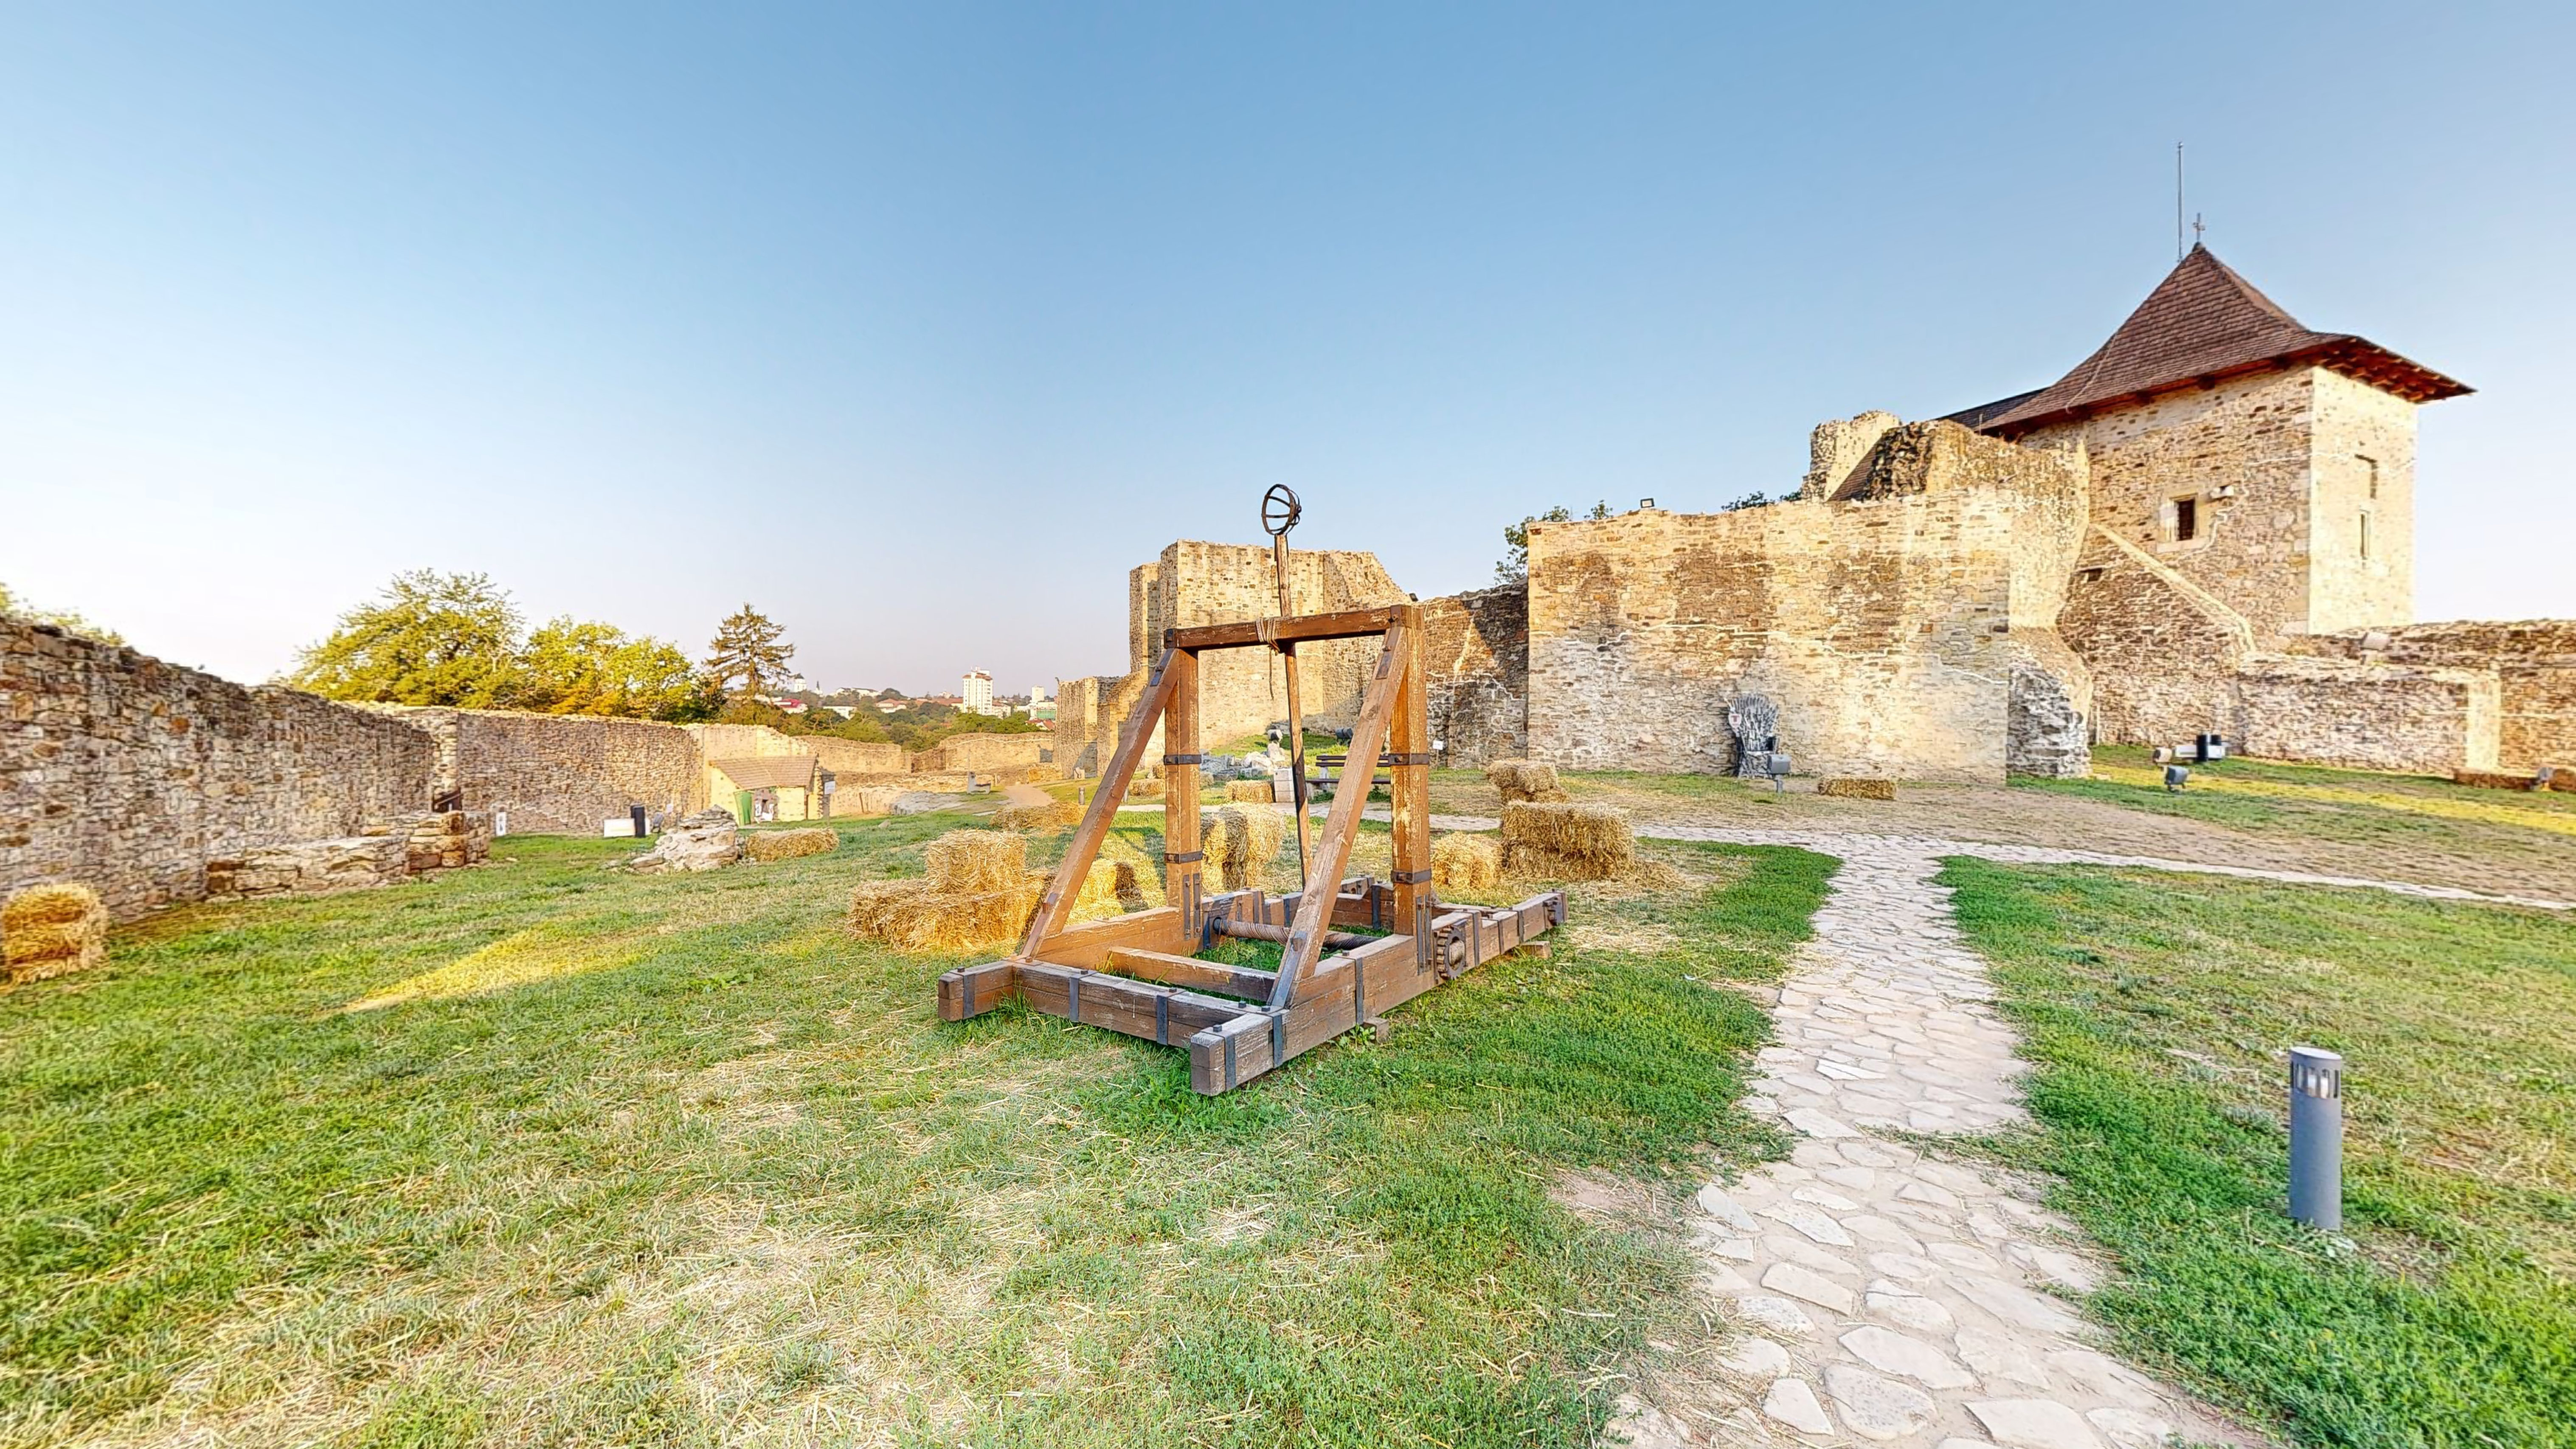 Cetatea-de-Scaun-a-Sucevei-10312023_154304